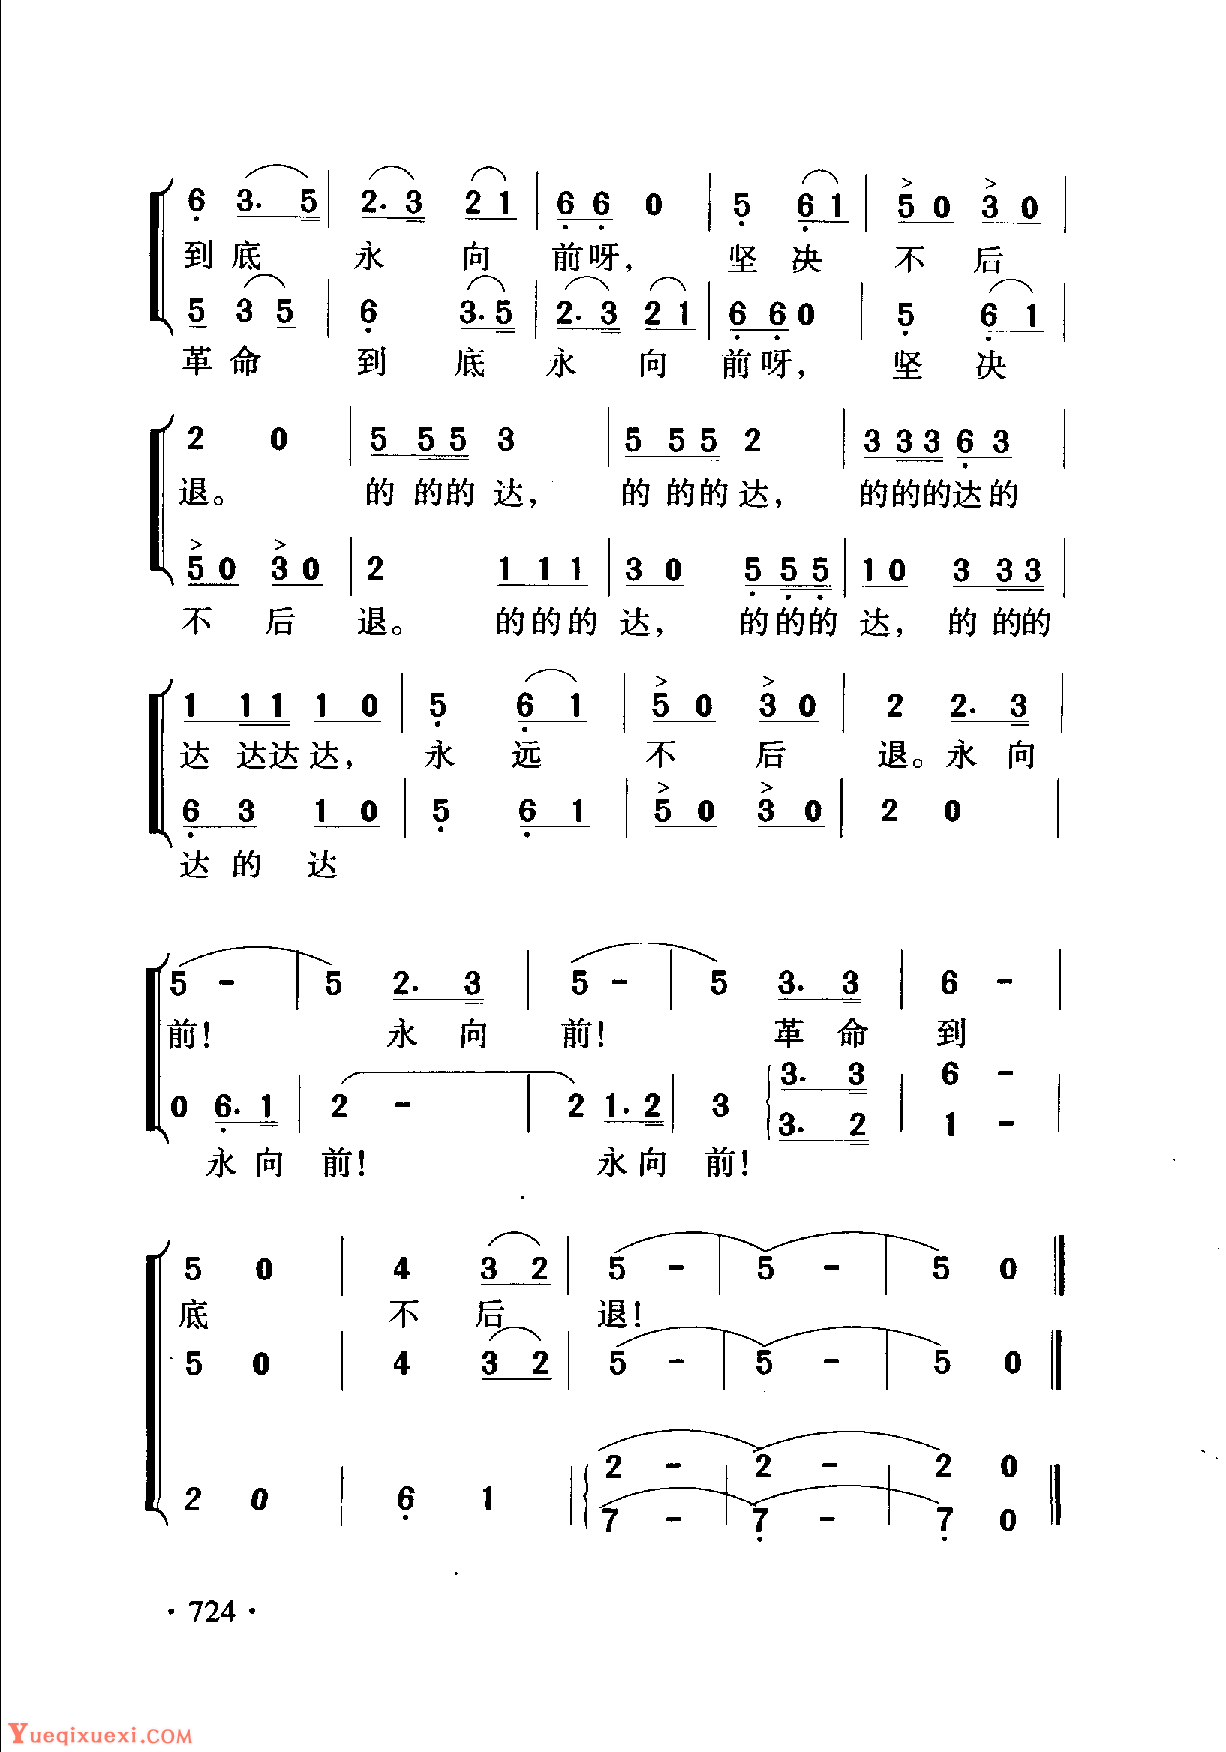 春之歌-汤普森现代钢琴第一册五线谱预览1-钢琴谱文件（五线谱、双手简谱、数字谱、Midi、PDF）免费下载